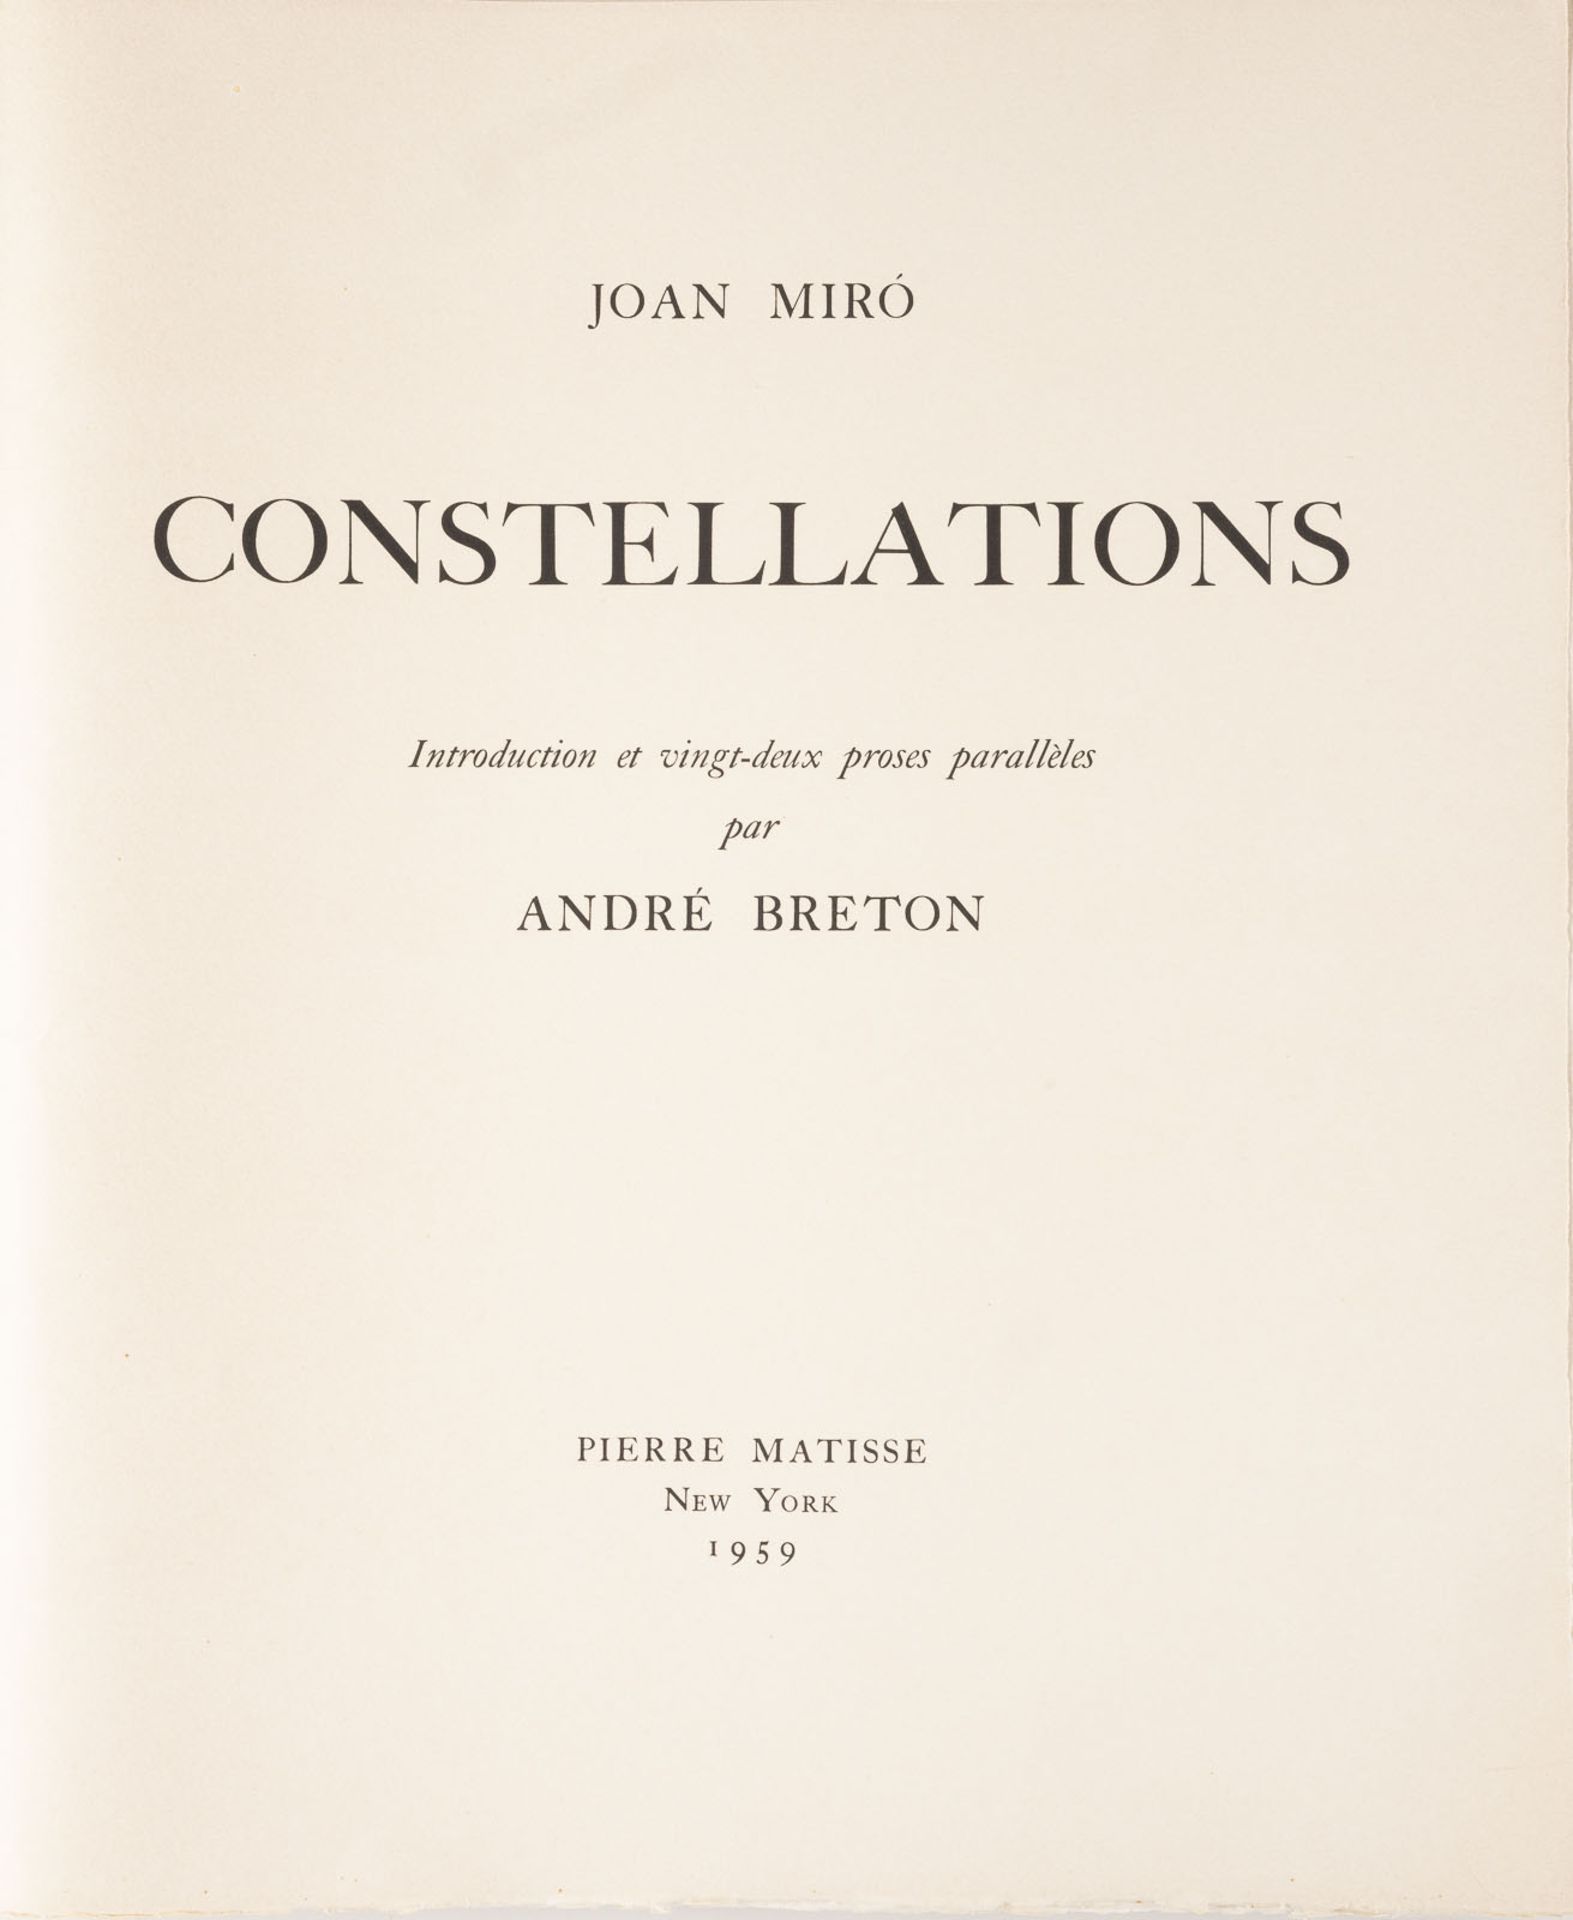 JOAN MIRO ZWEI BLÄTTER AUS 'CONSTELLATION' (1959) - Bild 2 aus 6